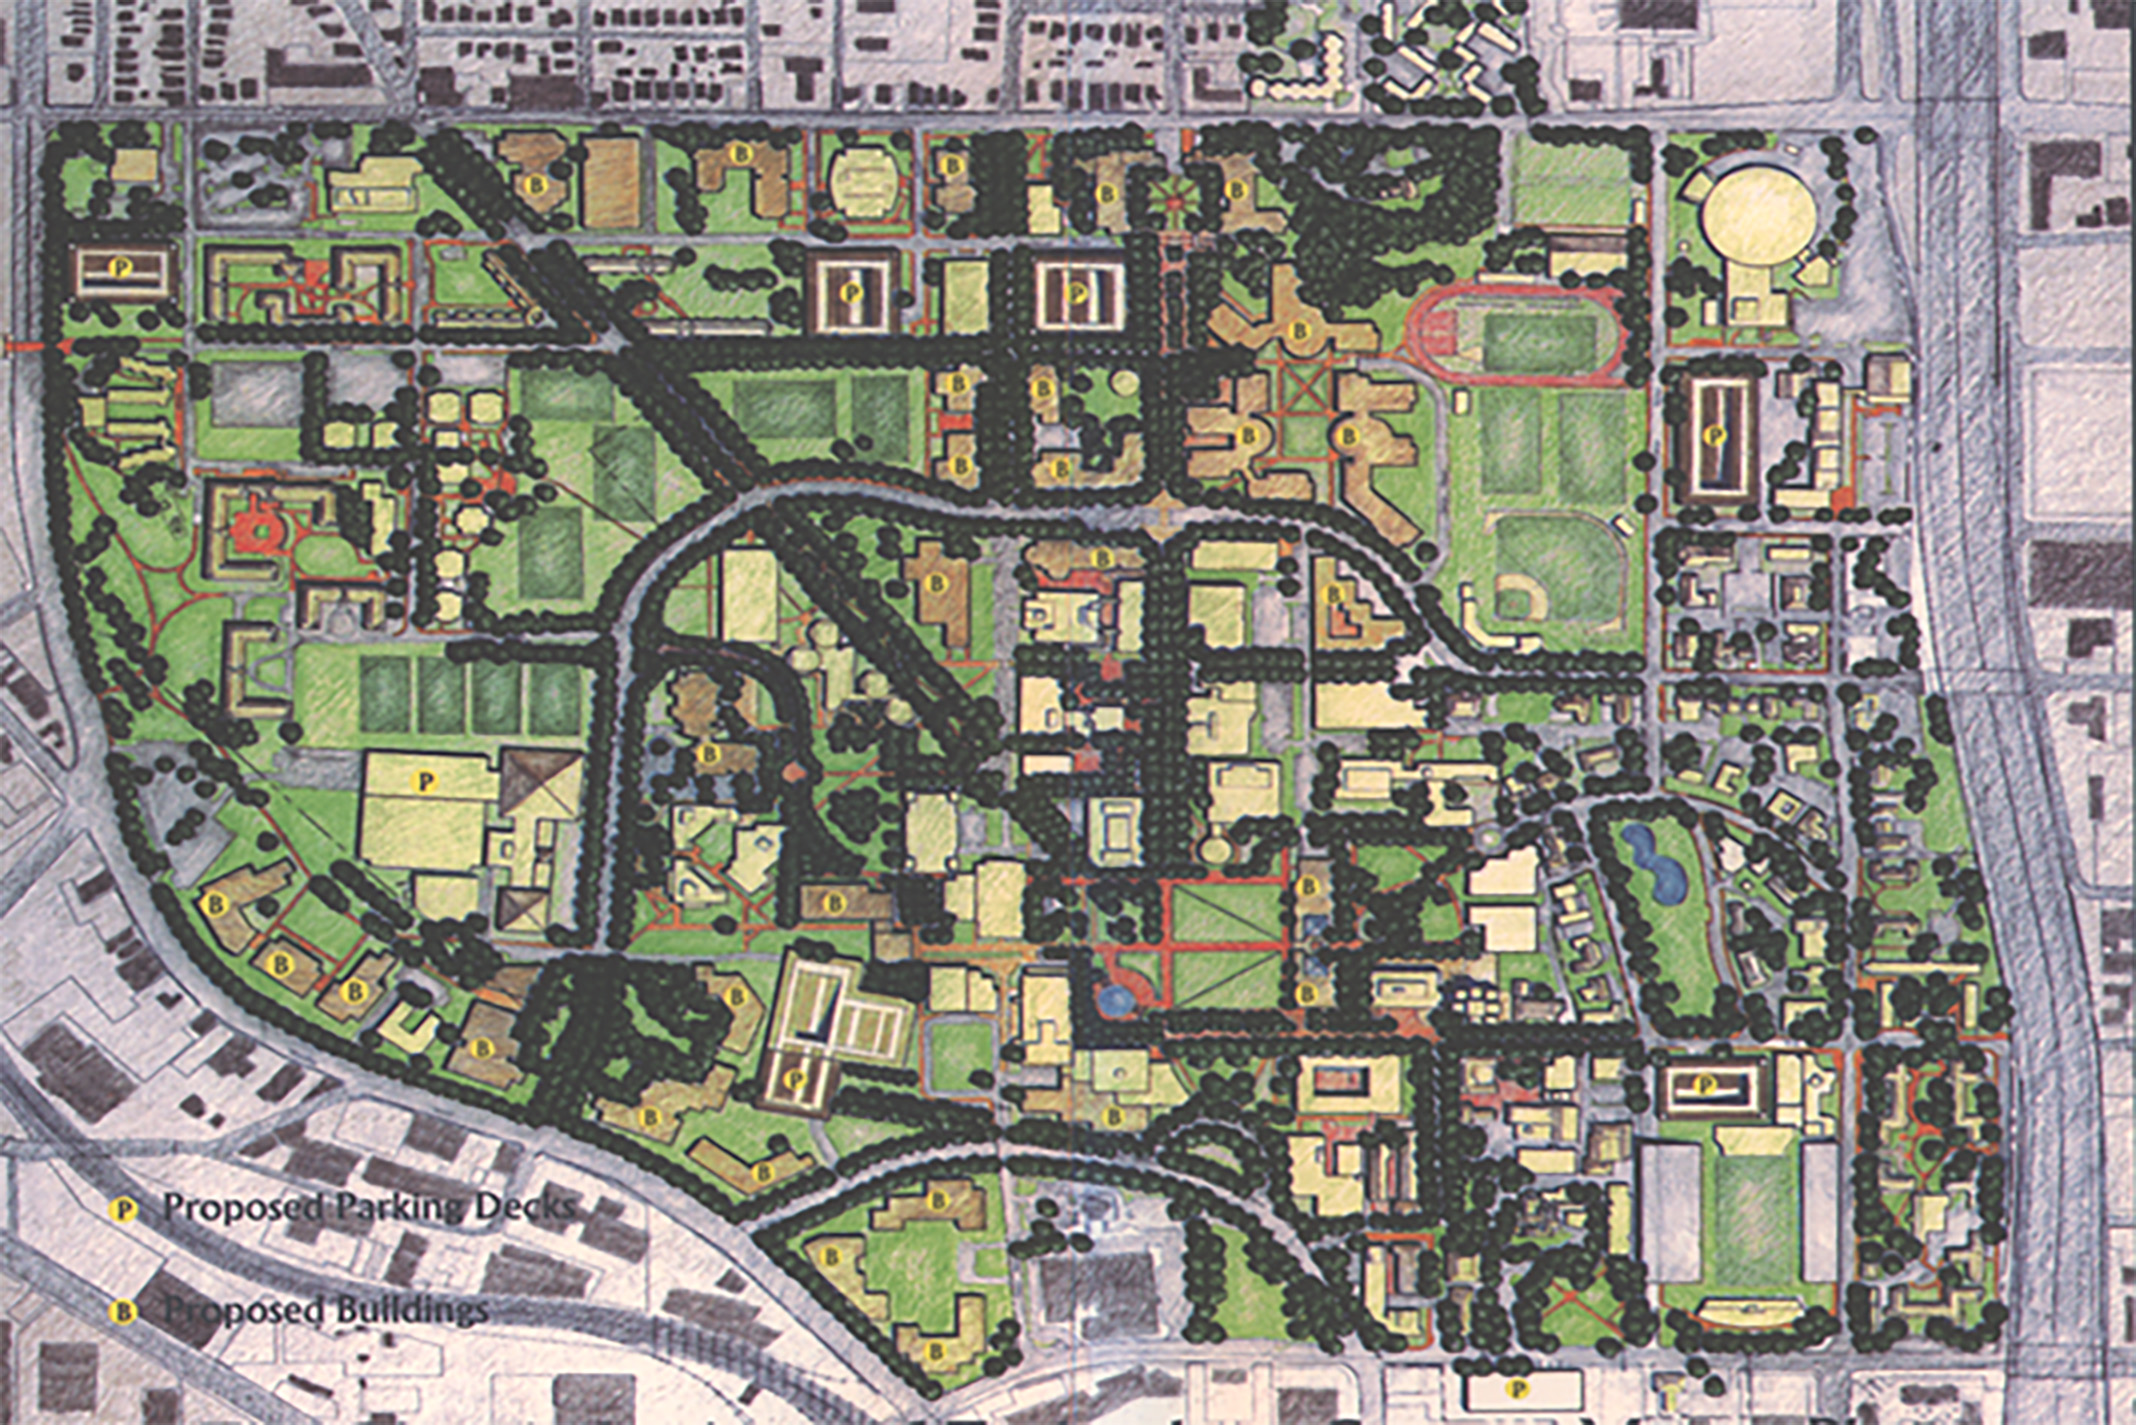 1997 Campus Plan Map